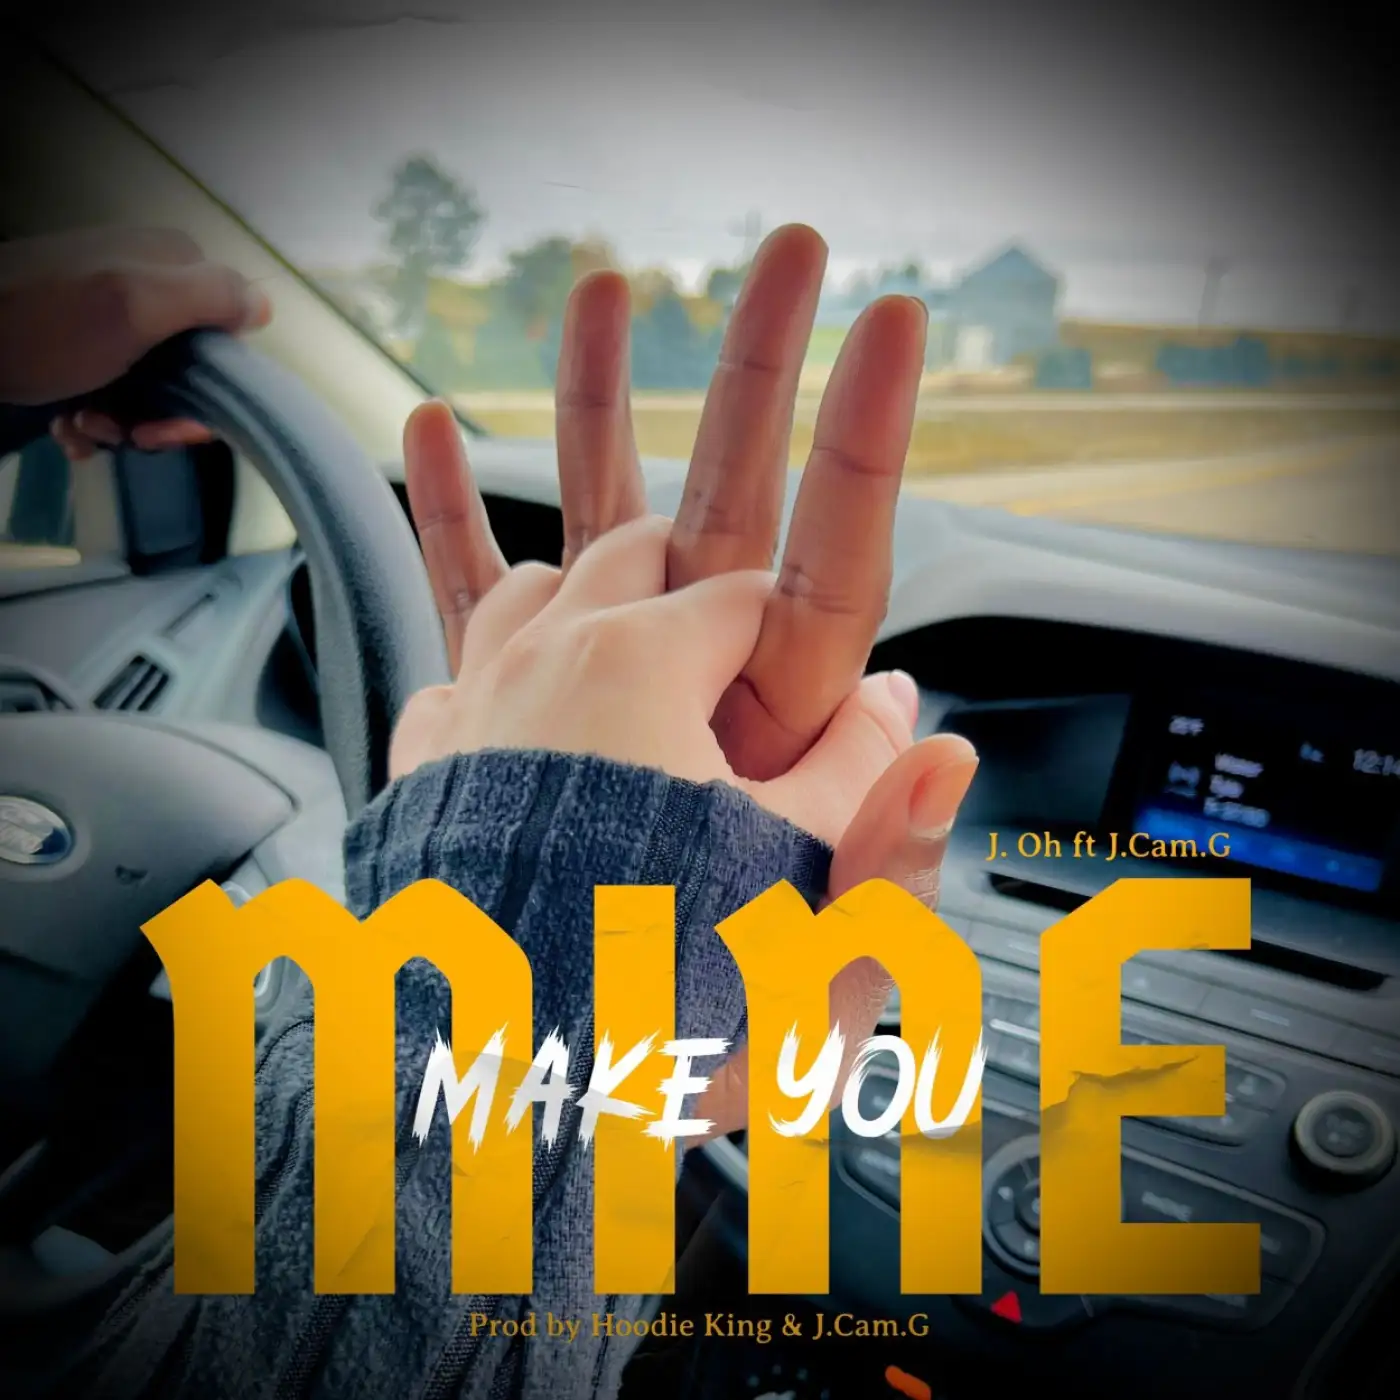 J.Oh-J.Oh - Make You Mine ft J Cam G (Prod. Hoodie King & J Cam G)-song artwork cover